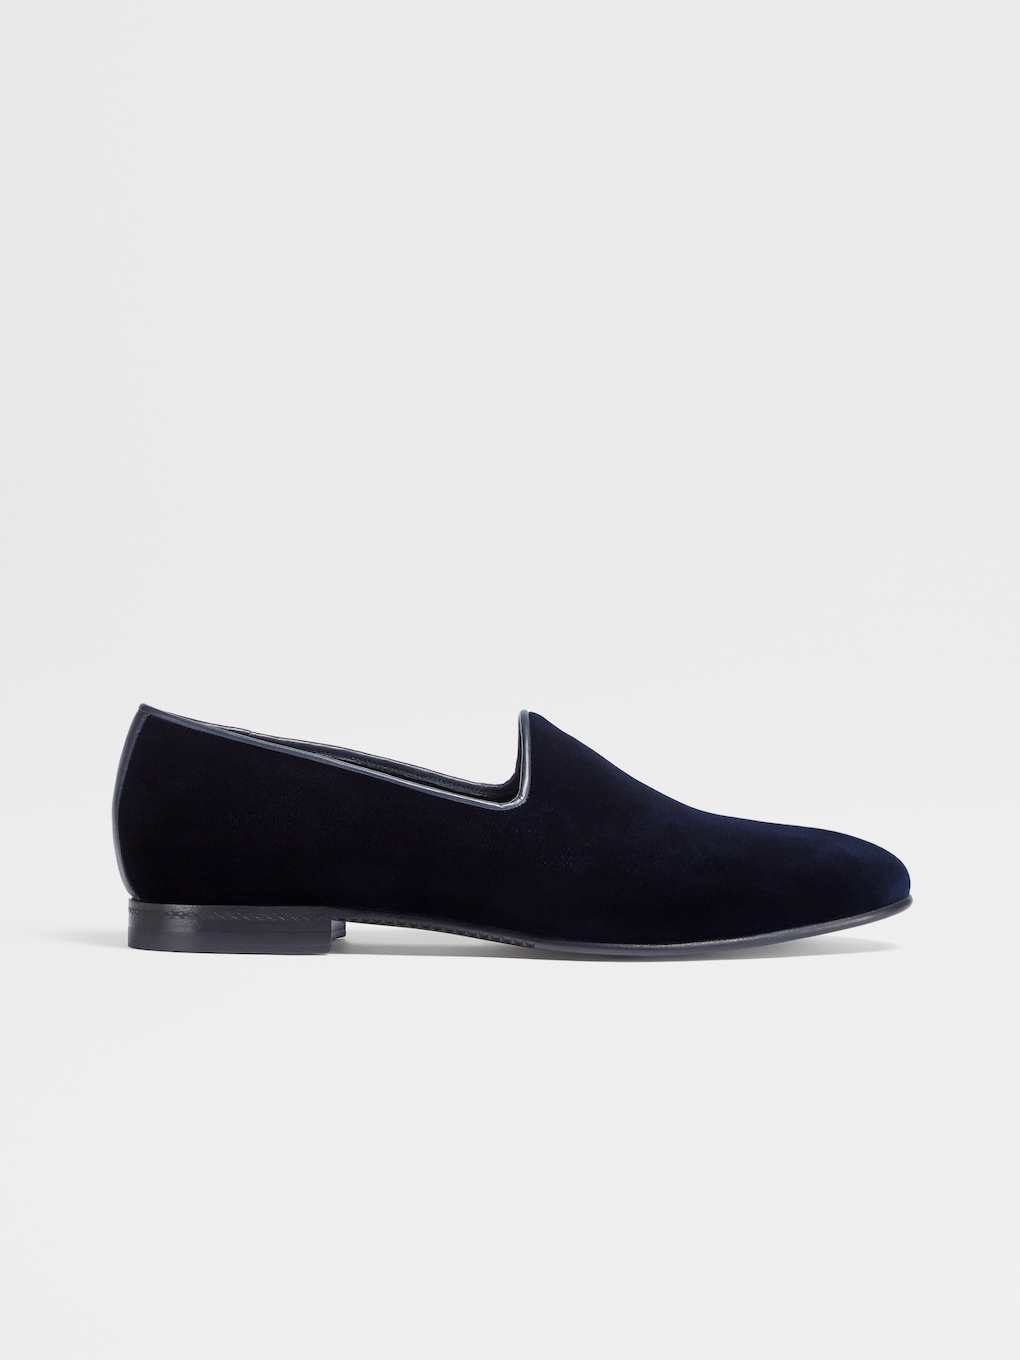 Men's Velvet Suede Loafer Slip on Dress Shoe